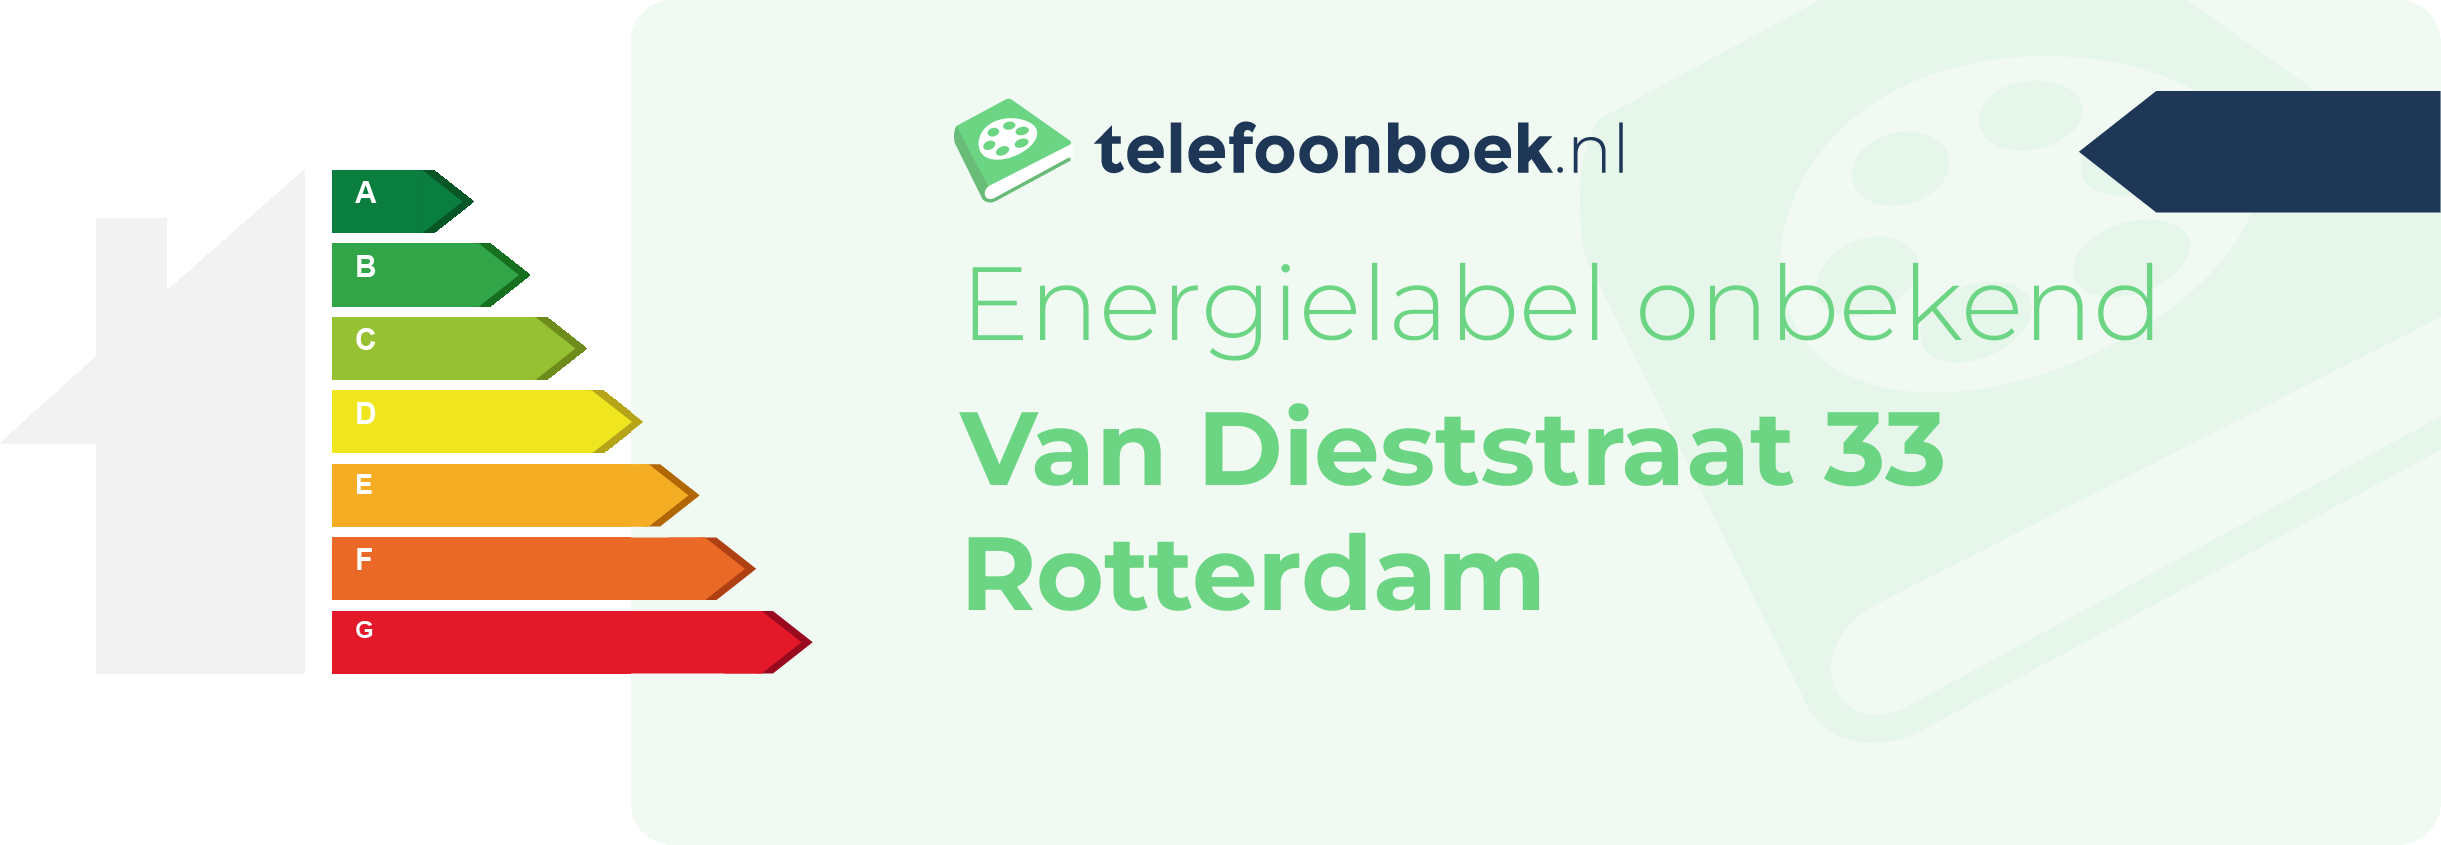 Energielabel Van Dieststraat 33 Rotterdam